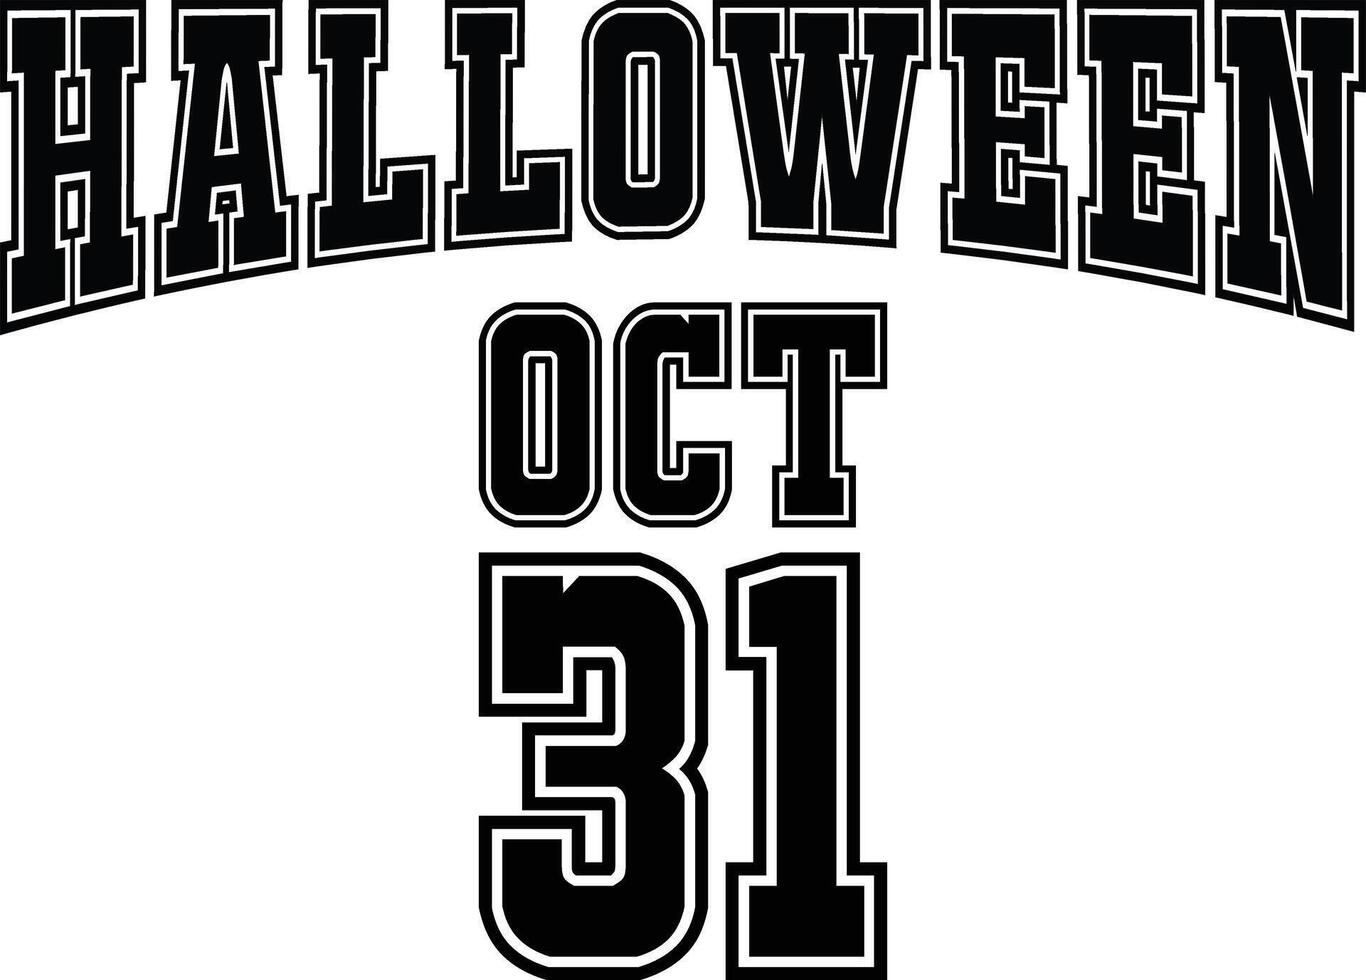 Halloween October 31 Funny Halloween T-Shirt Design vector